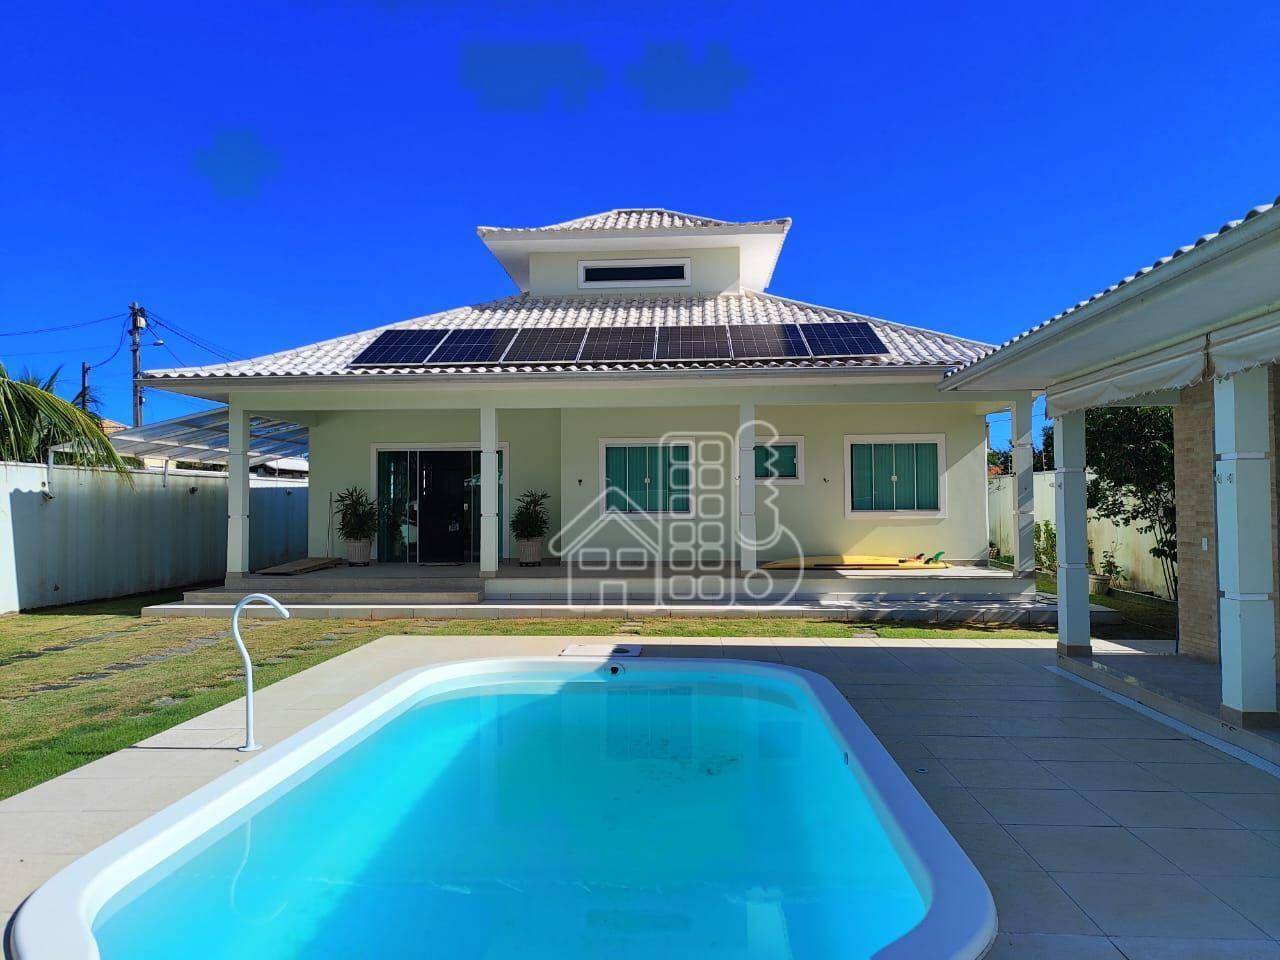 Casa com 3 dormitórios à venda, 300 m² por R$ 800.000,00 - Jaconé (Ponta Negra) - Maricá/RJ